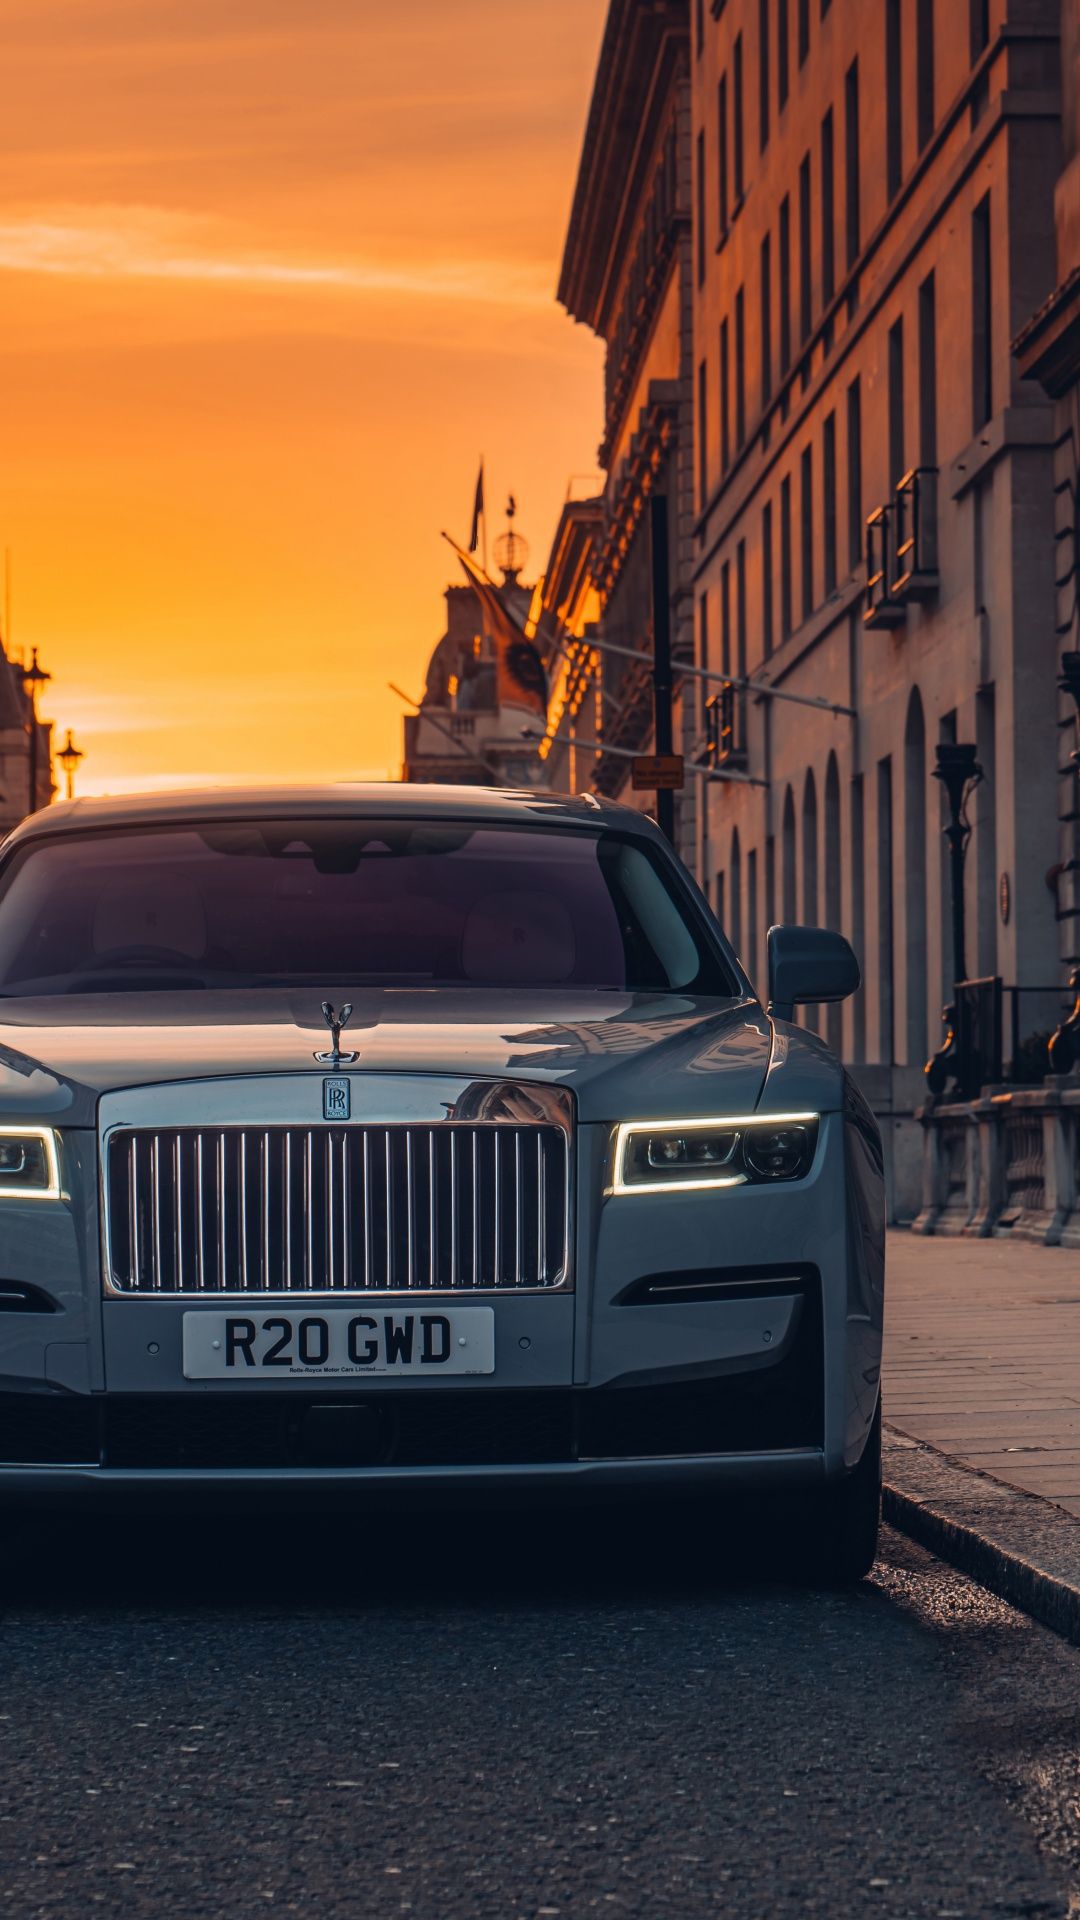 Rolls Royce Wallpapers - Top 35 Best Rolls Royce Backgrounds Download